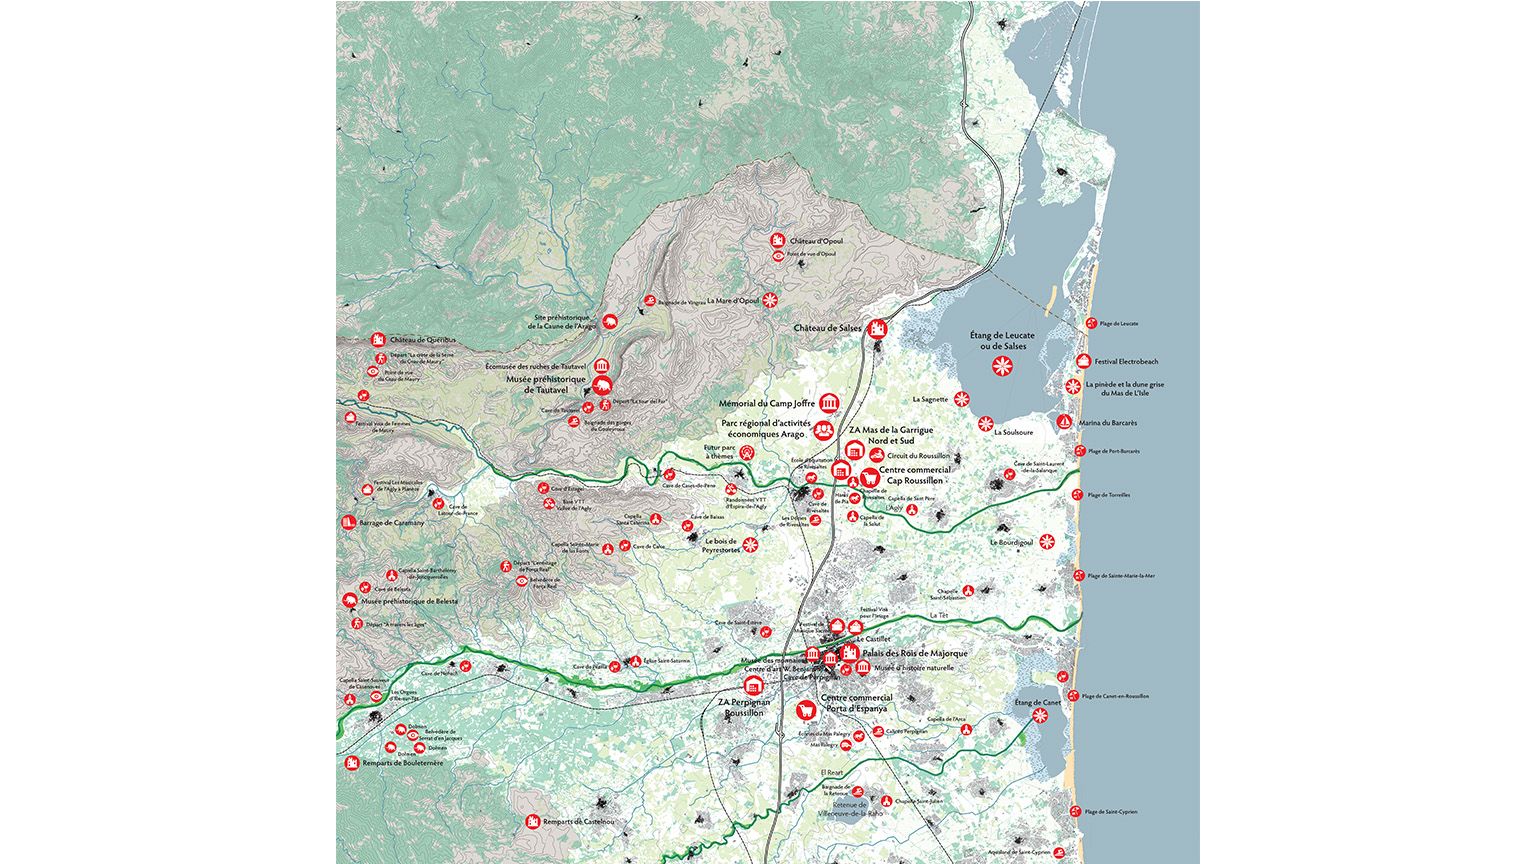 Assistance auprès de la DREAL Languedoc-Roussillon, Définir une stratégie d’aménagement pour le territoire de la Porte d’entrée Nord du département des PO et de l’agglomération de Perpignan